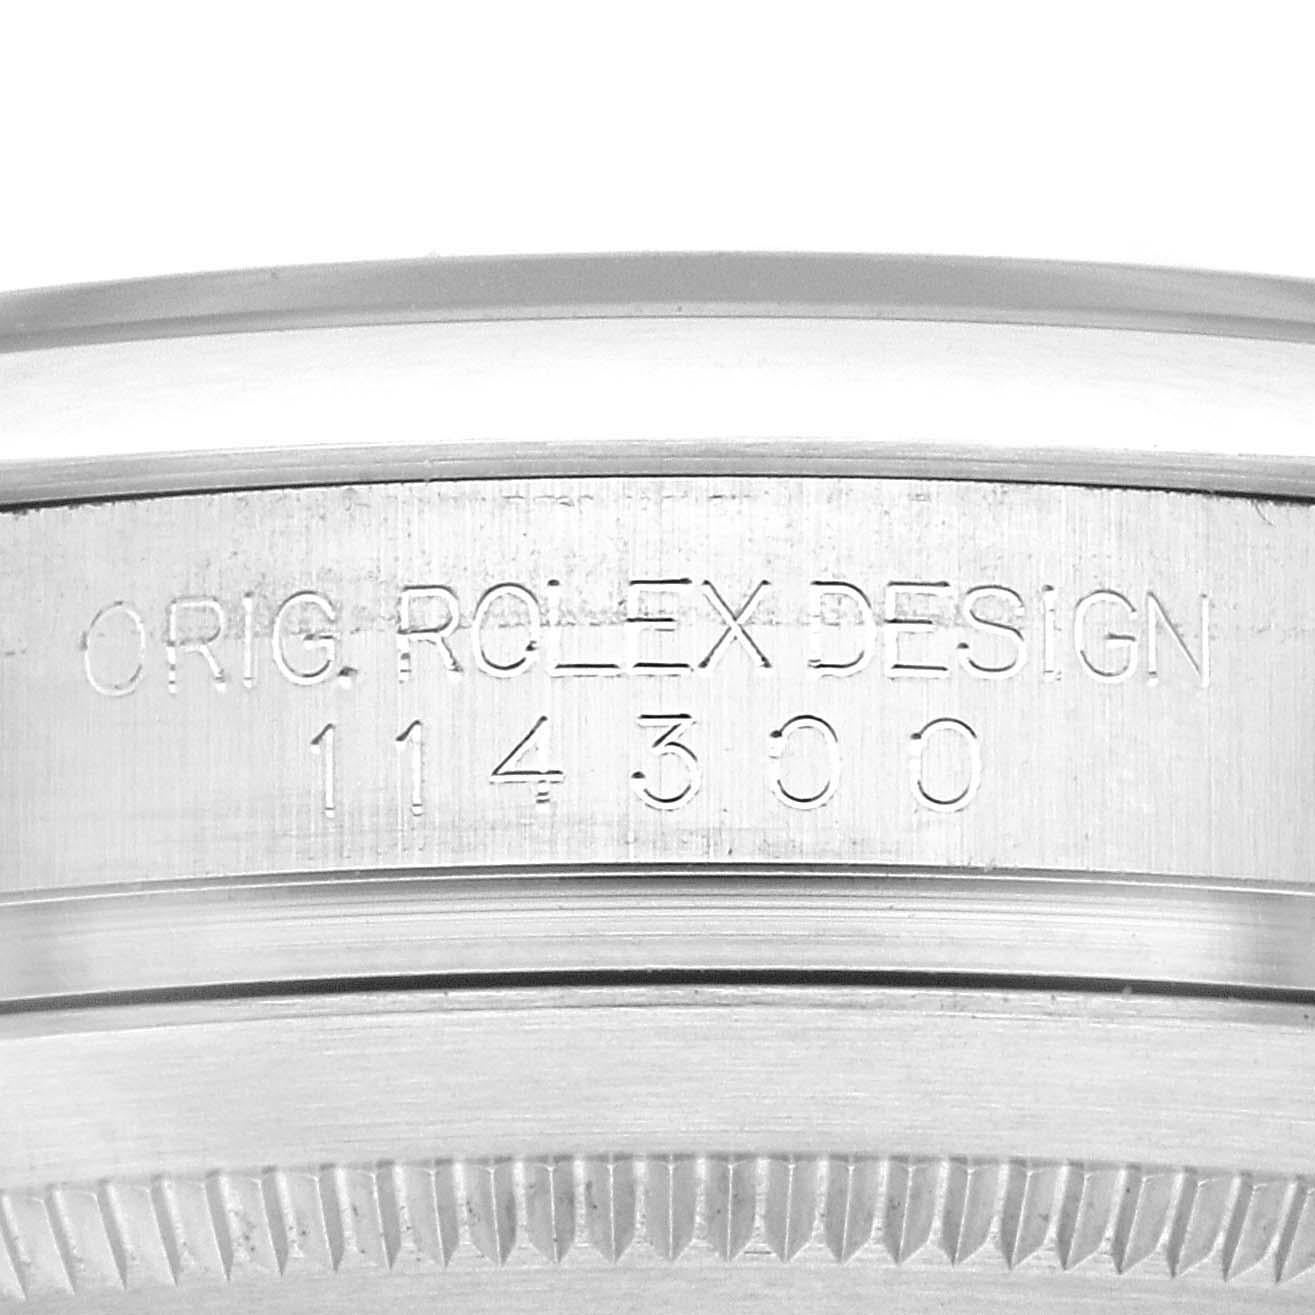 Rolex Oyster Perpetual 39 Black Dial Steel Mens Watch 114300 Box Card. Mouvement automatique à remontage automatique, officiellement certifié chronomètre. Boîtier en acier inoxydable de 39.0 mm de diamètre. Logo Rolex sur une couronne. Lunette